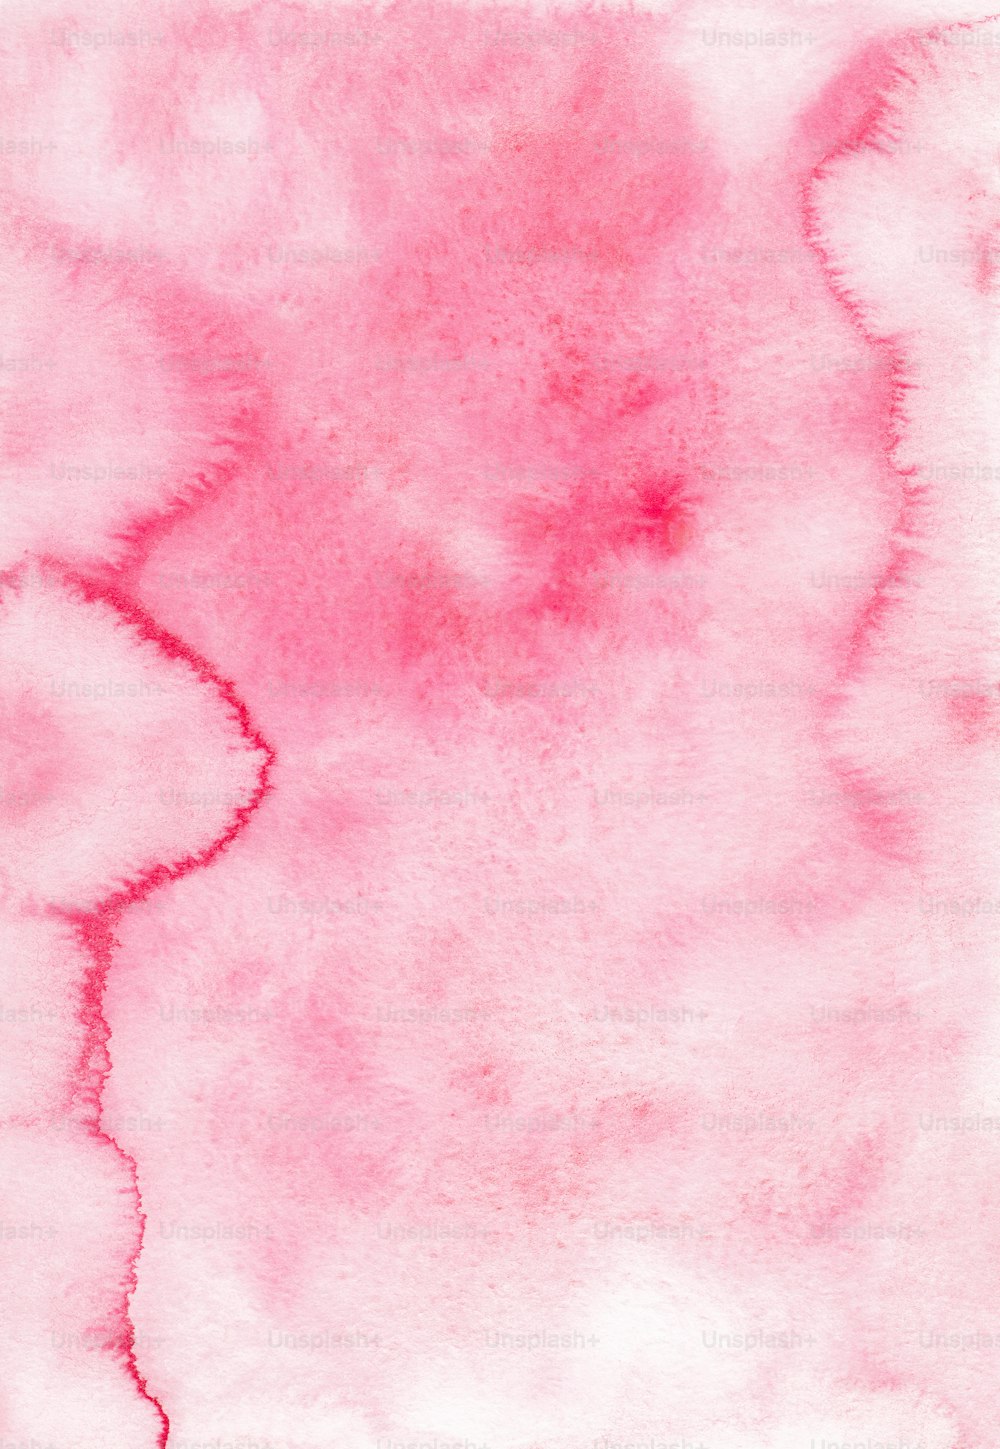 un dipinto ad acquerello di uno sfondo rosa e bianco